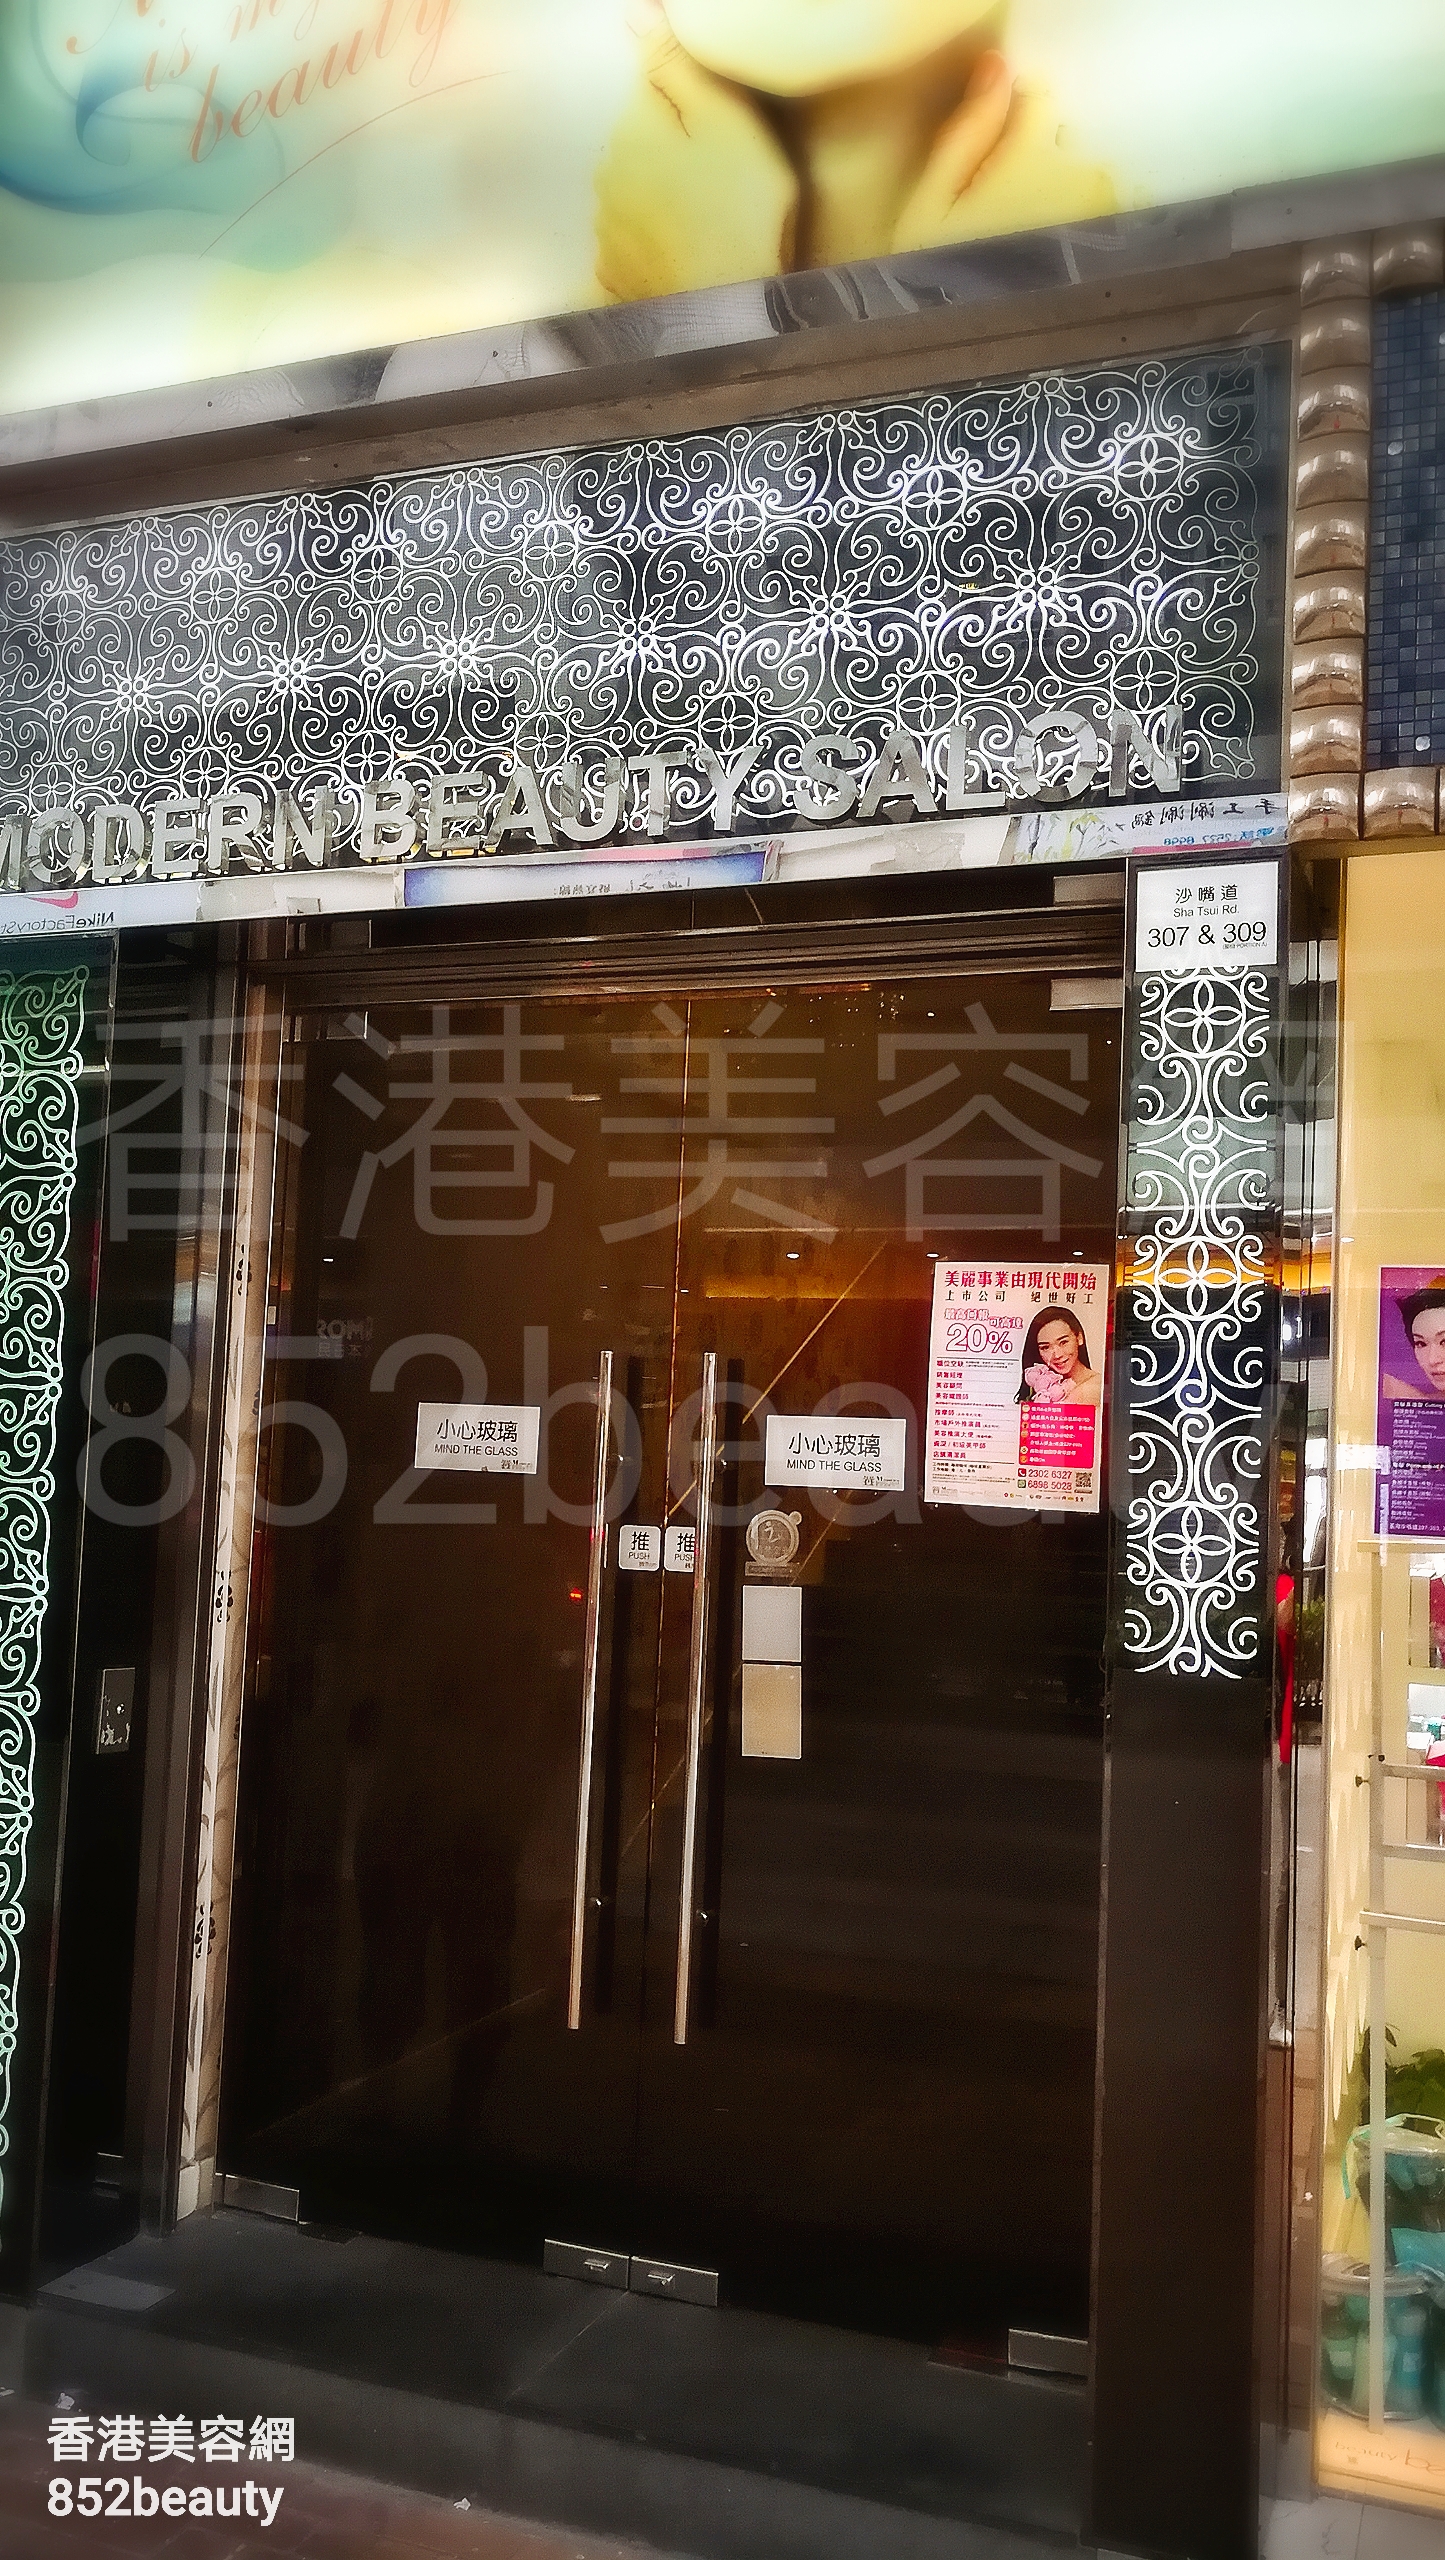 Hong Kong Beauty Salon Beauty Salon / Beautician: 現代美容中心 (荃灣店)